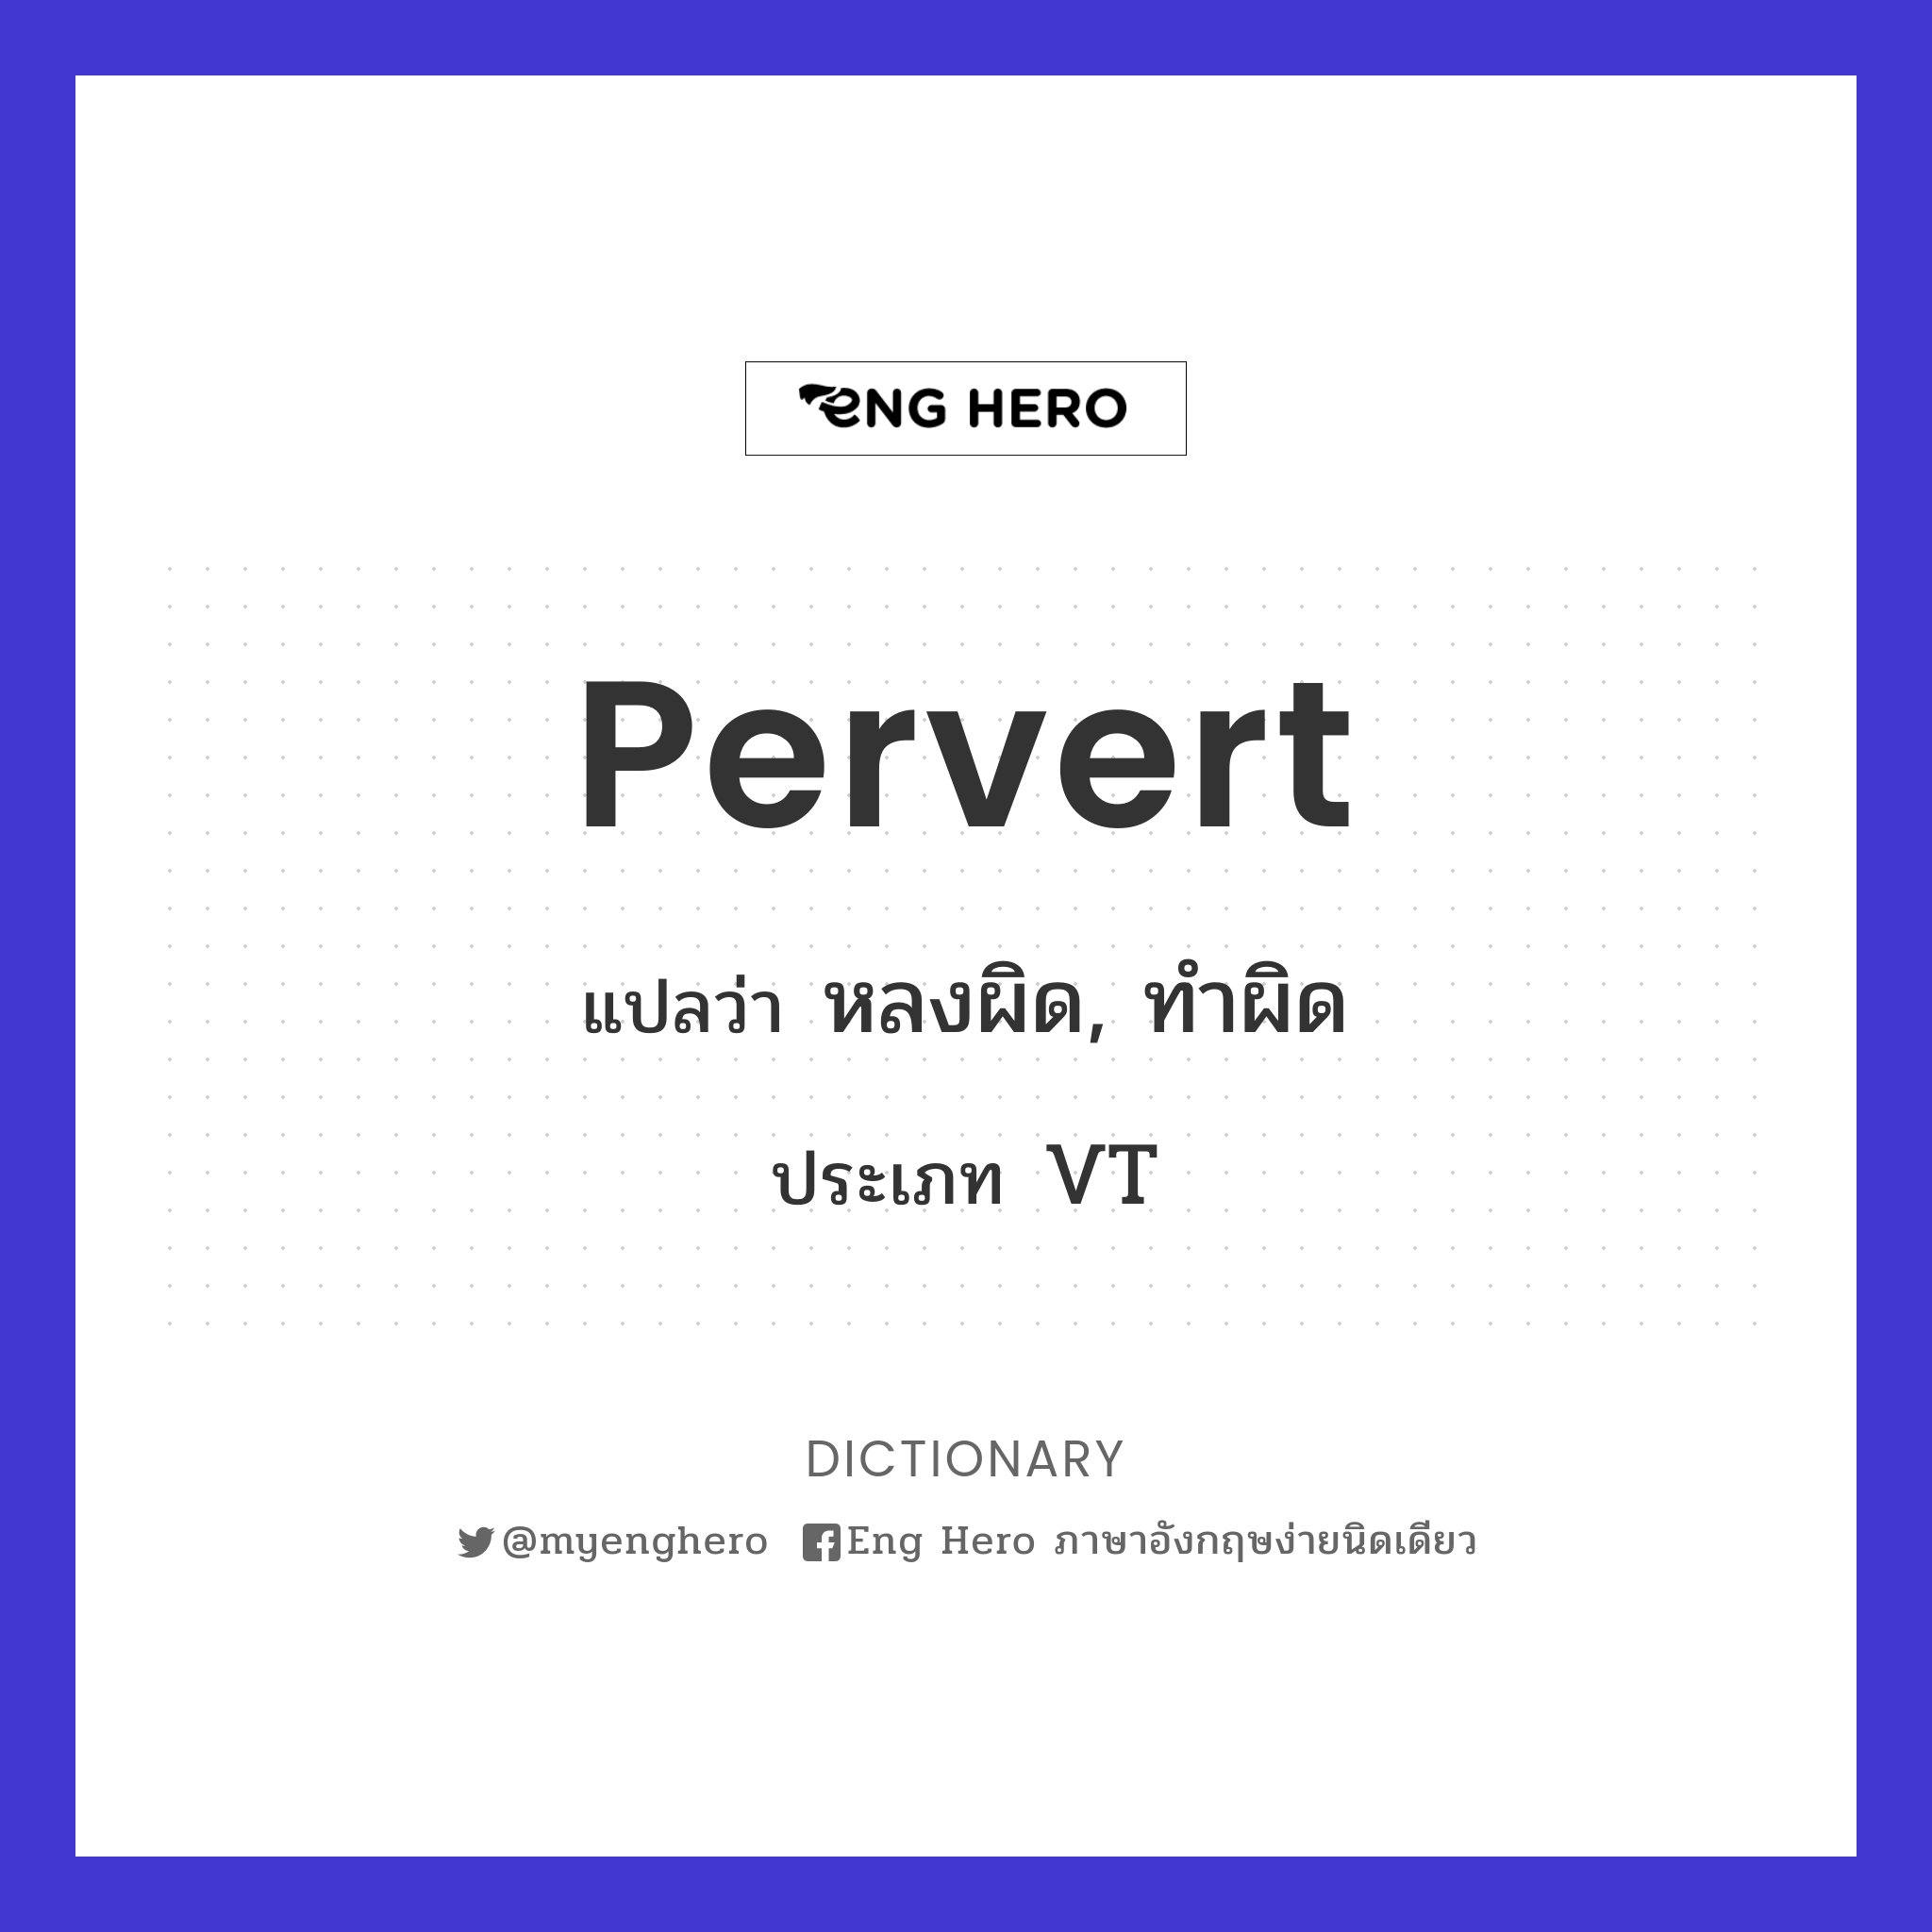 Pervert แปลว่า หลงผิด, ทำผิด | Eng Hero เรียนภาษาอังกฤษ ออนไลน์ ฟรี